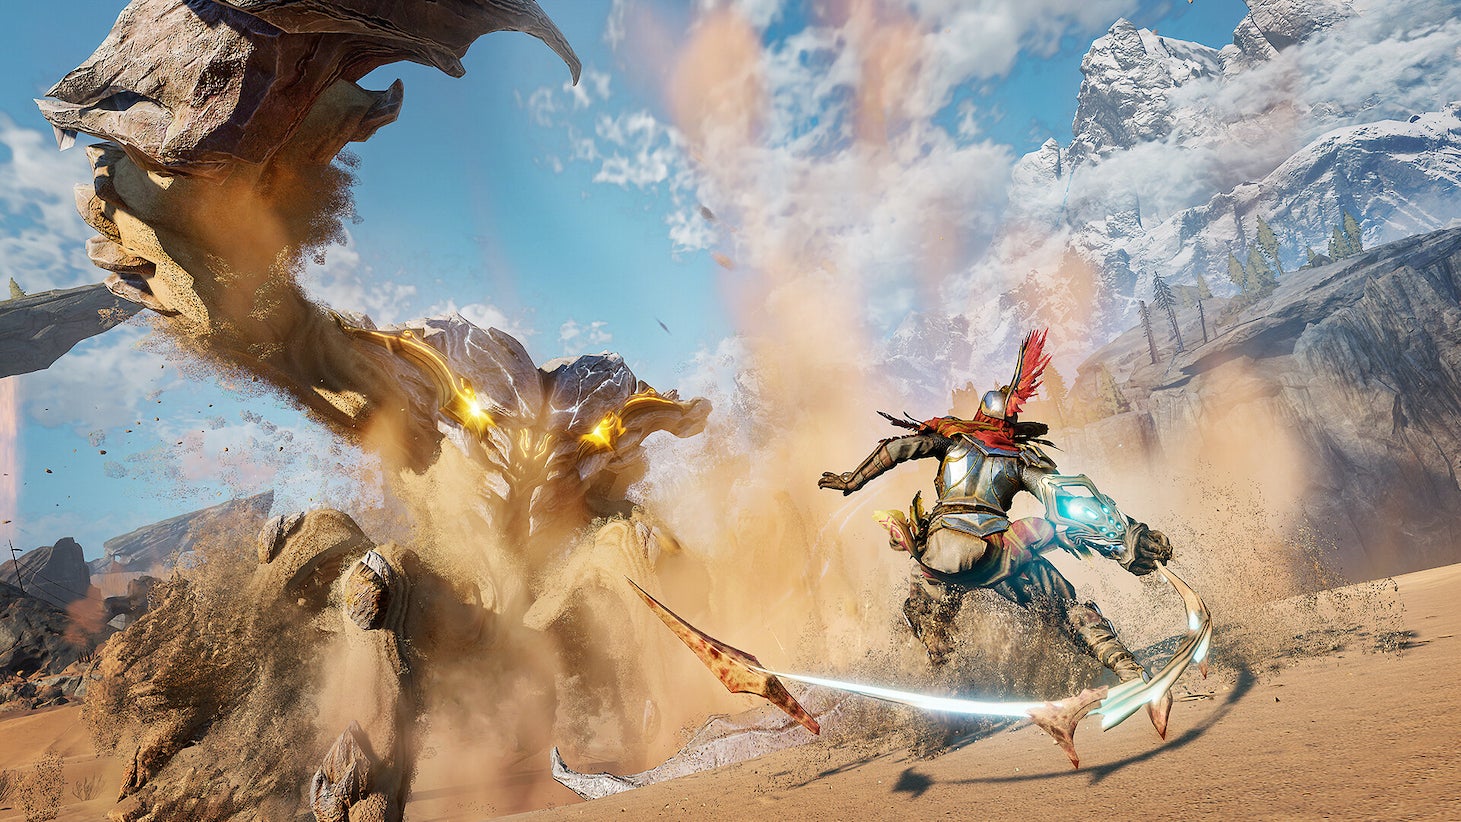 A warrior is swinging a weapon upwards toward a large beast in the desert in Atlas Fallen